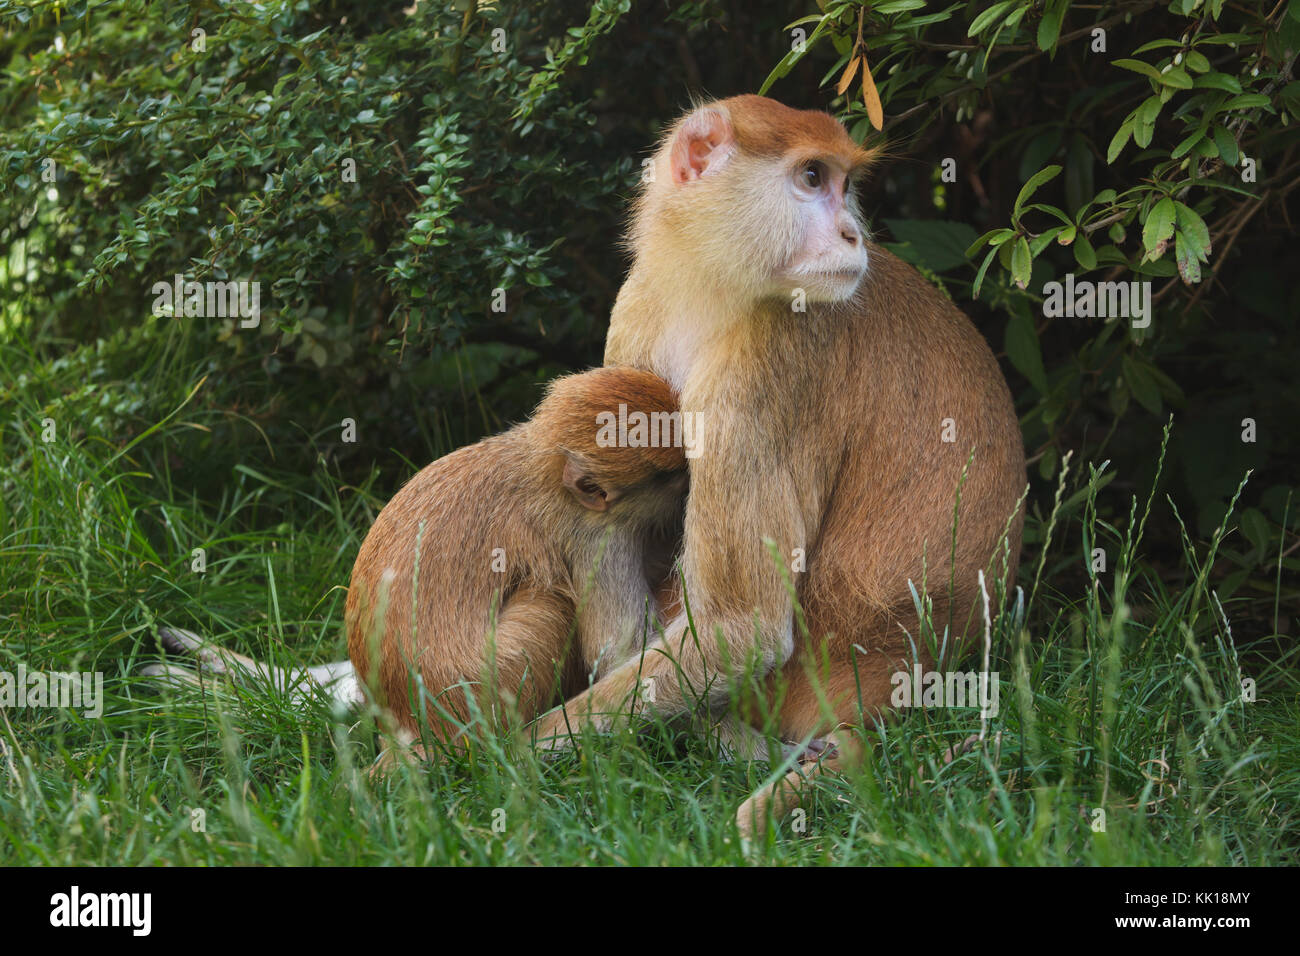 Patas-Affe (Erythrocebus patas), auch bekannt als Husarenaffen, der sein neugeborenes Baby füttert. Stockfoto